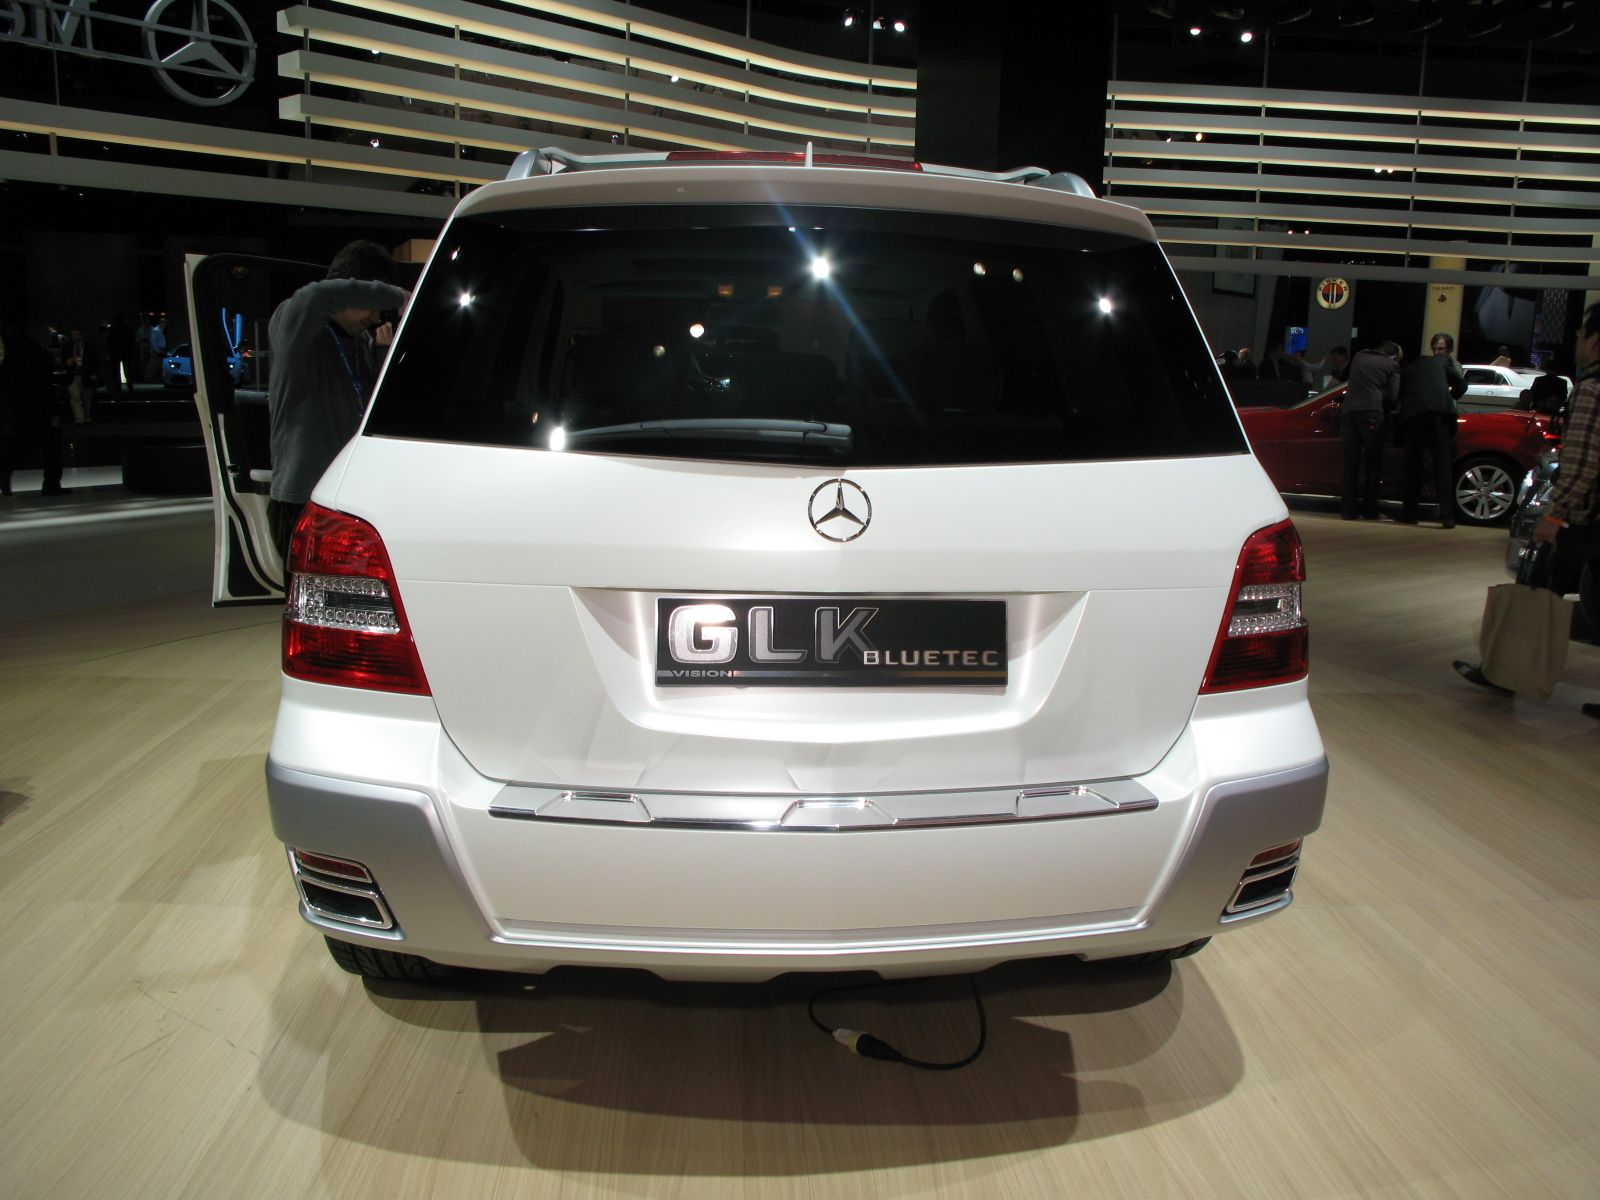 2008 Mercedes Vision GLK Freeside